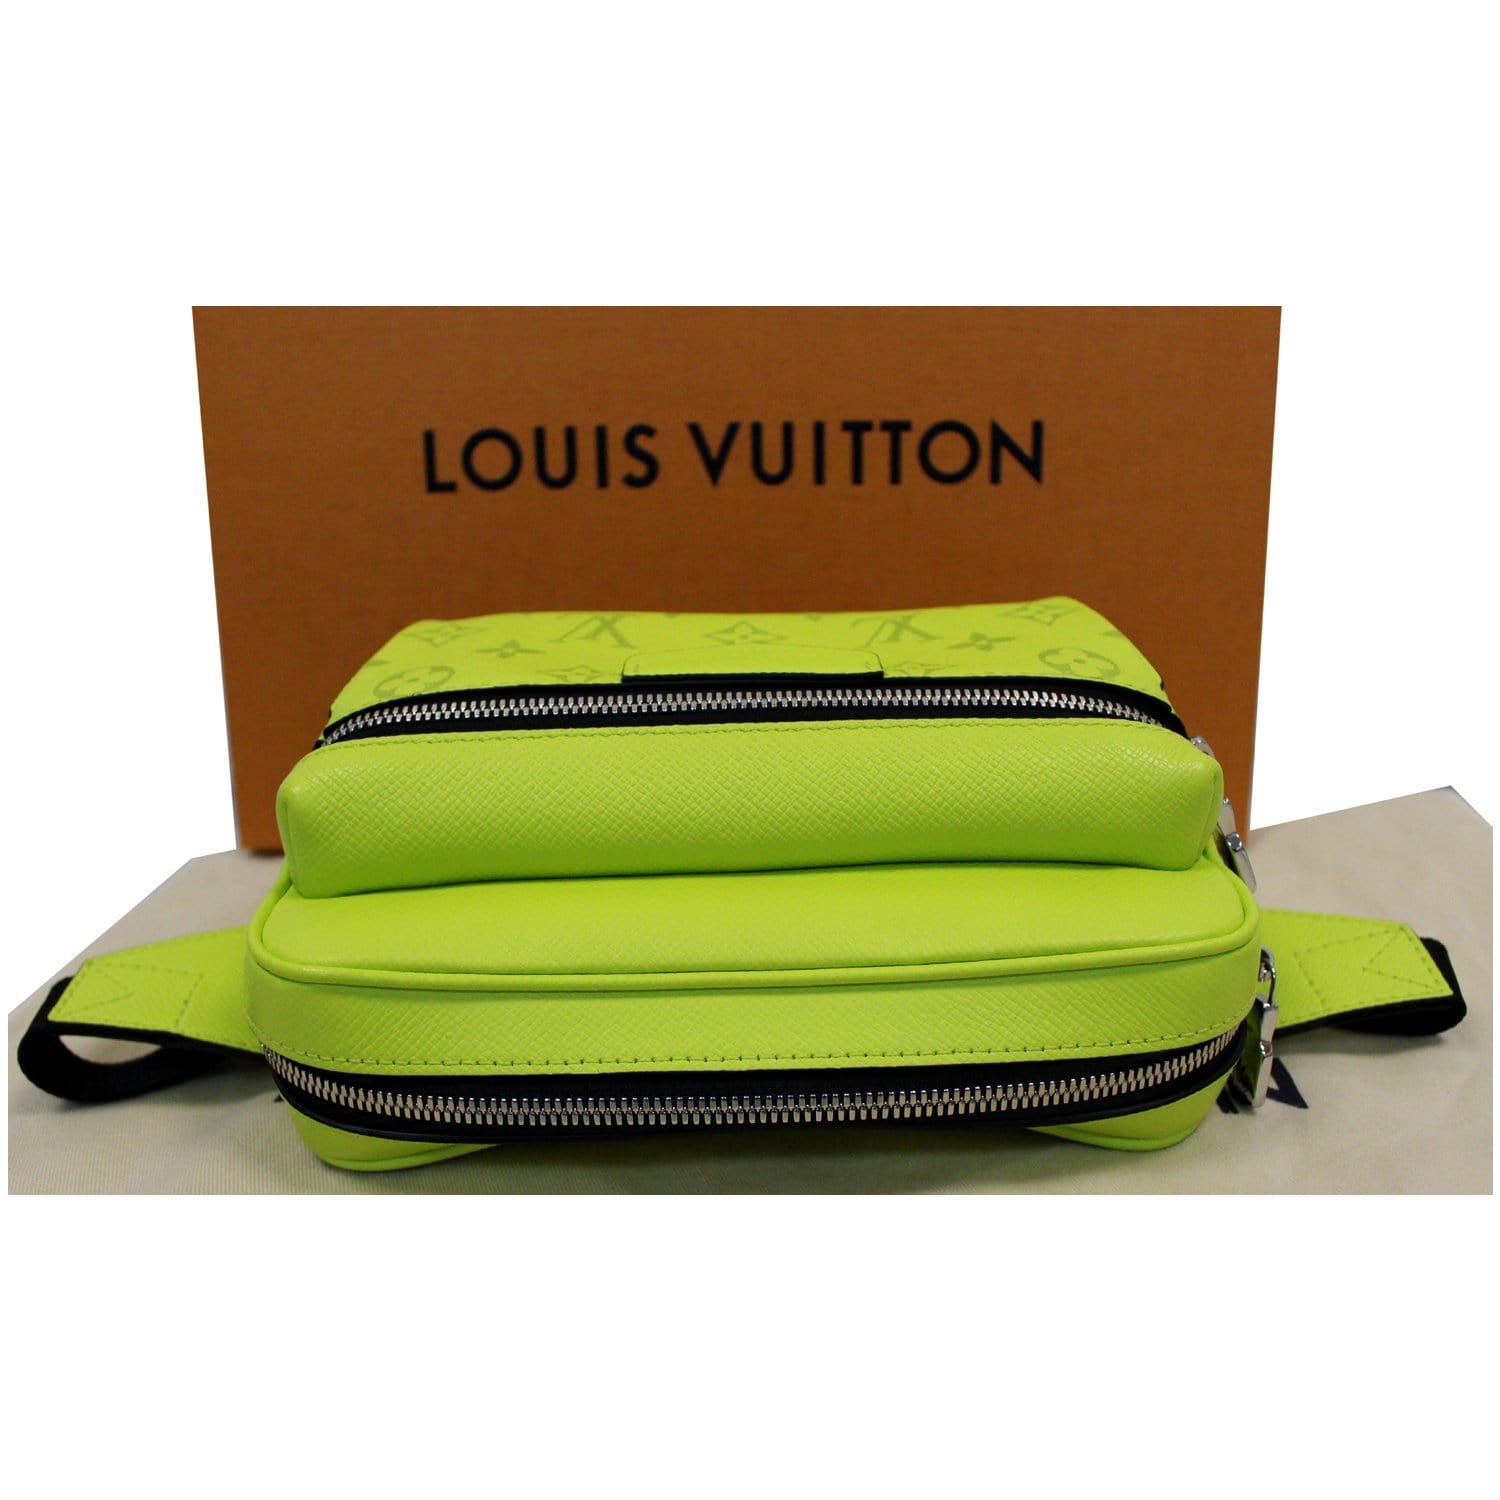 LOUIS VUITTON Boston bag M30114 Epithea green Taiga Taiga from